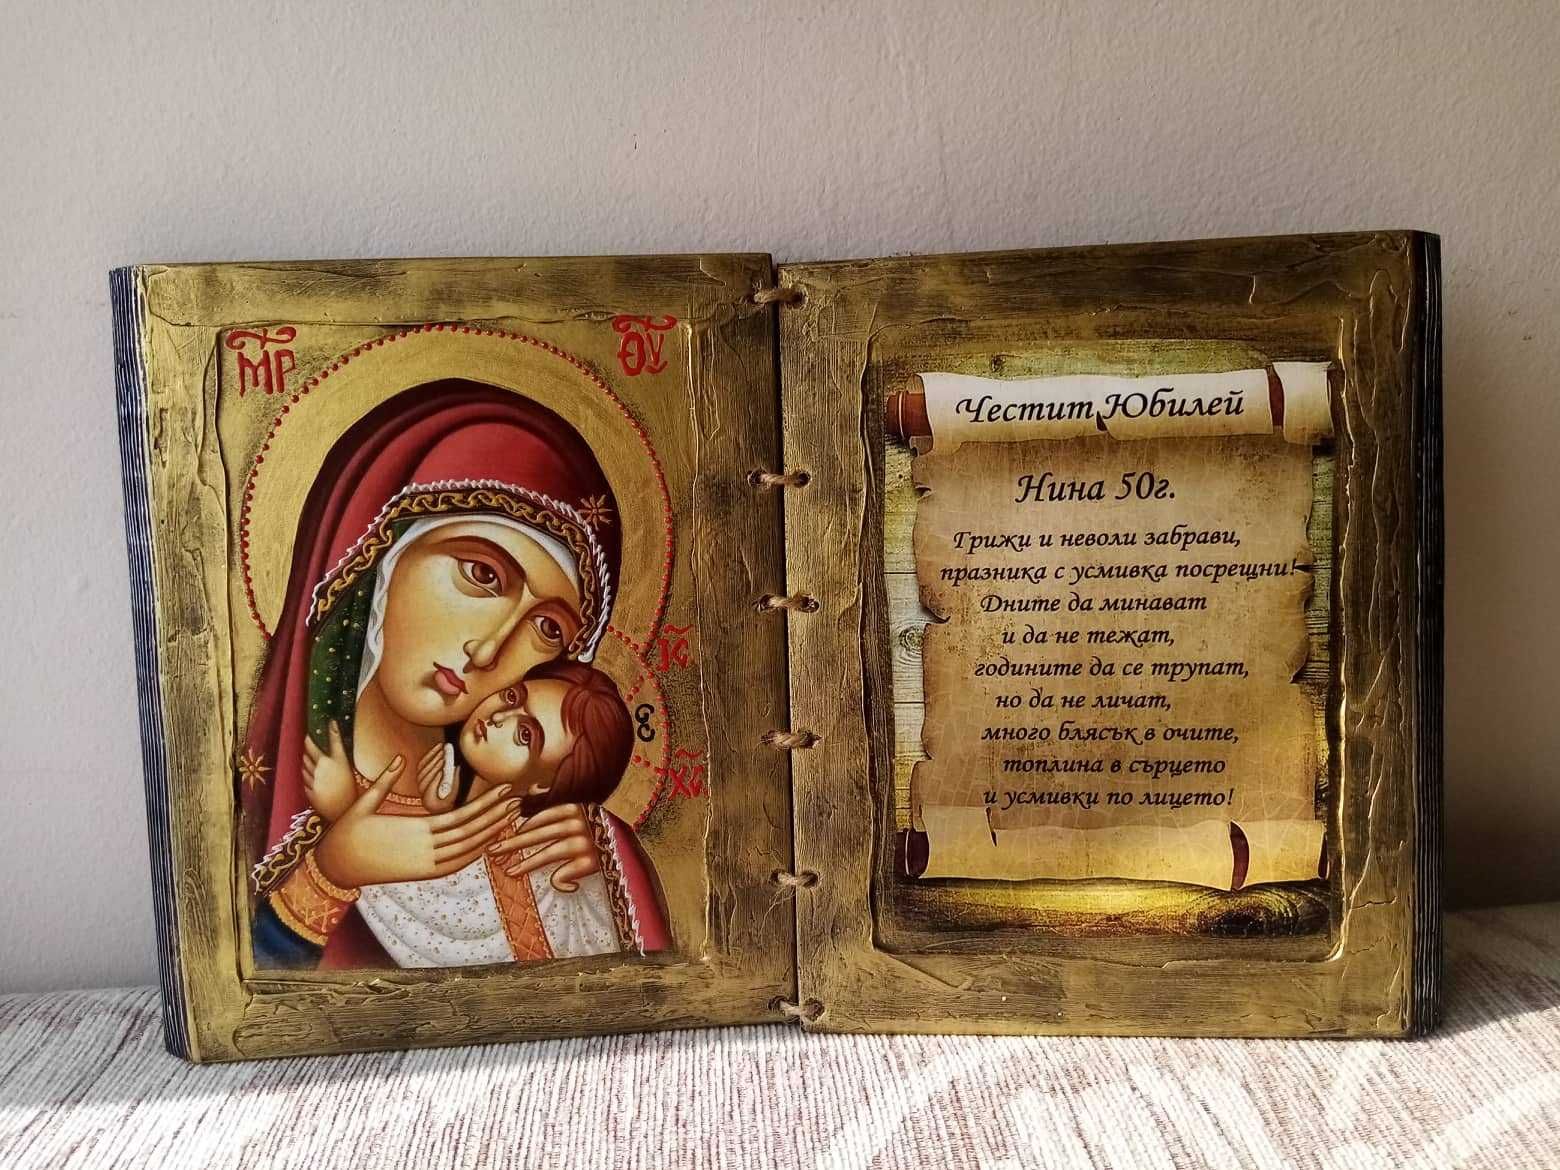 Ръчно рисувани книги икони за юбилей или кръщене